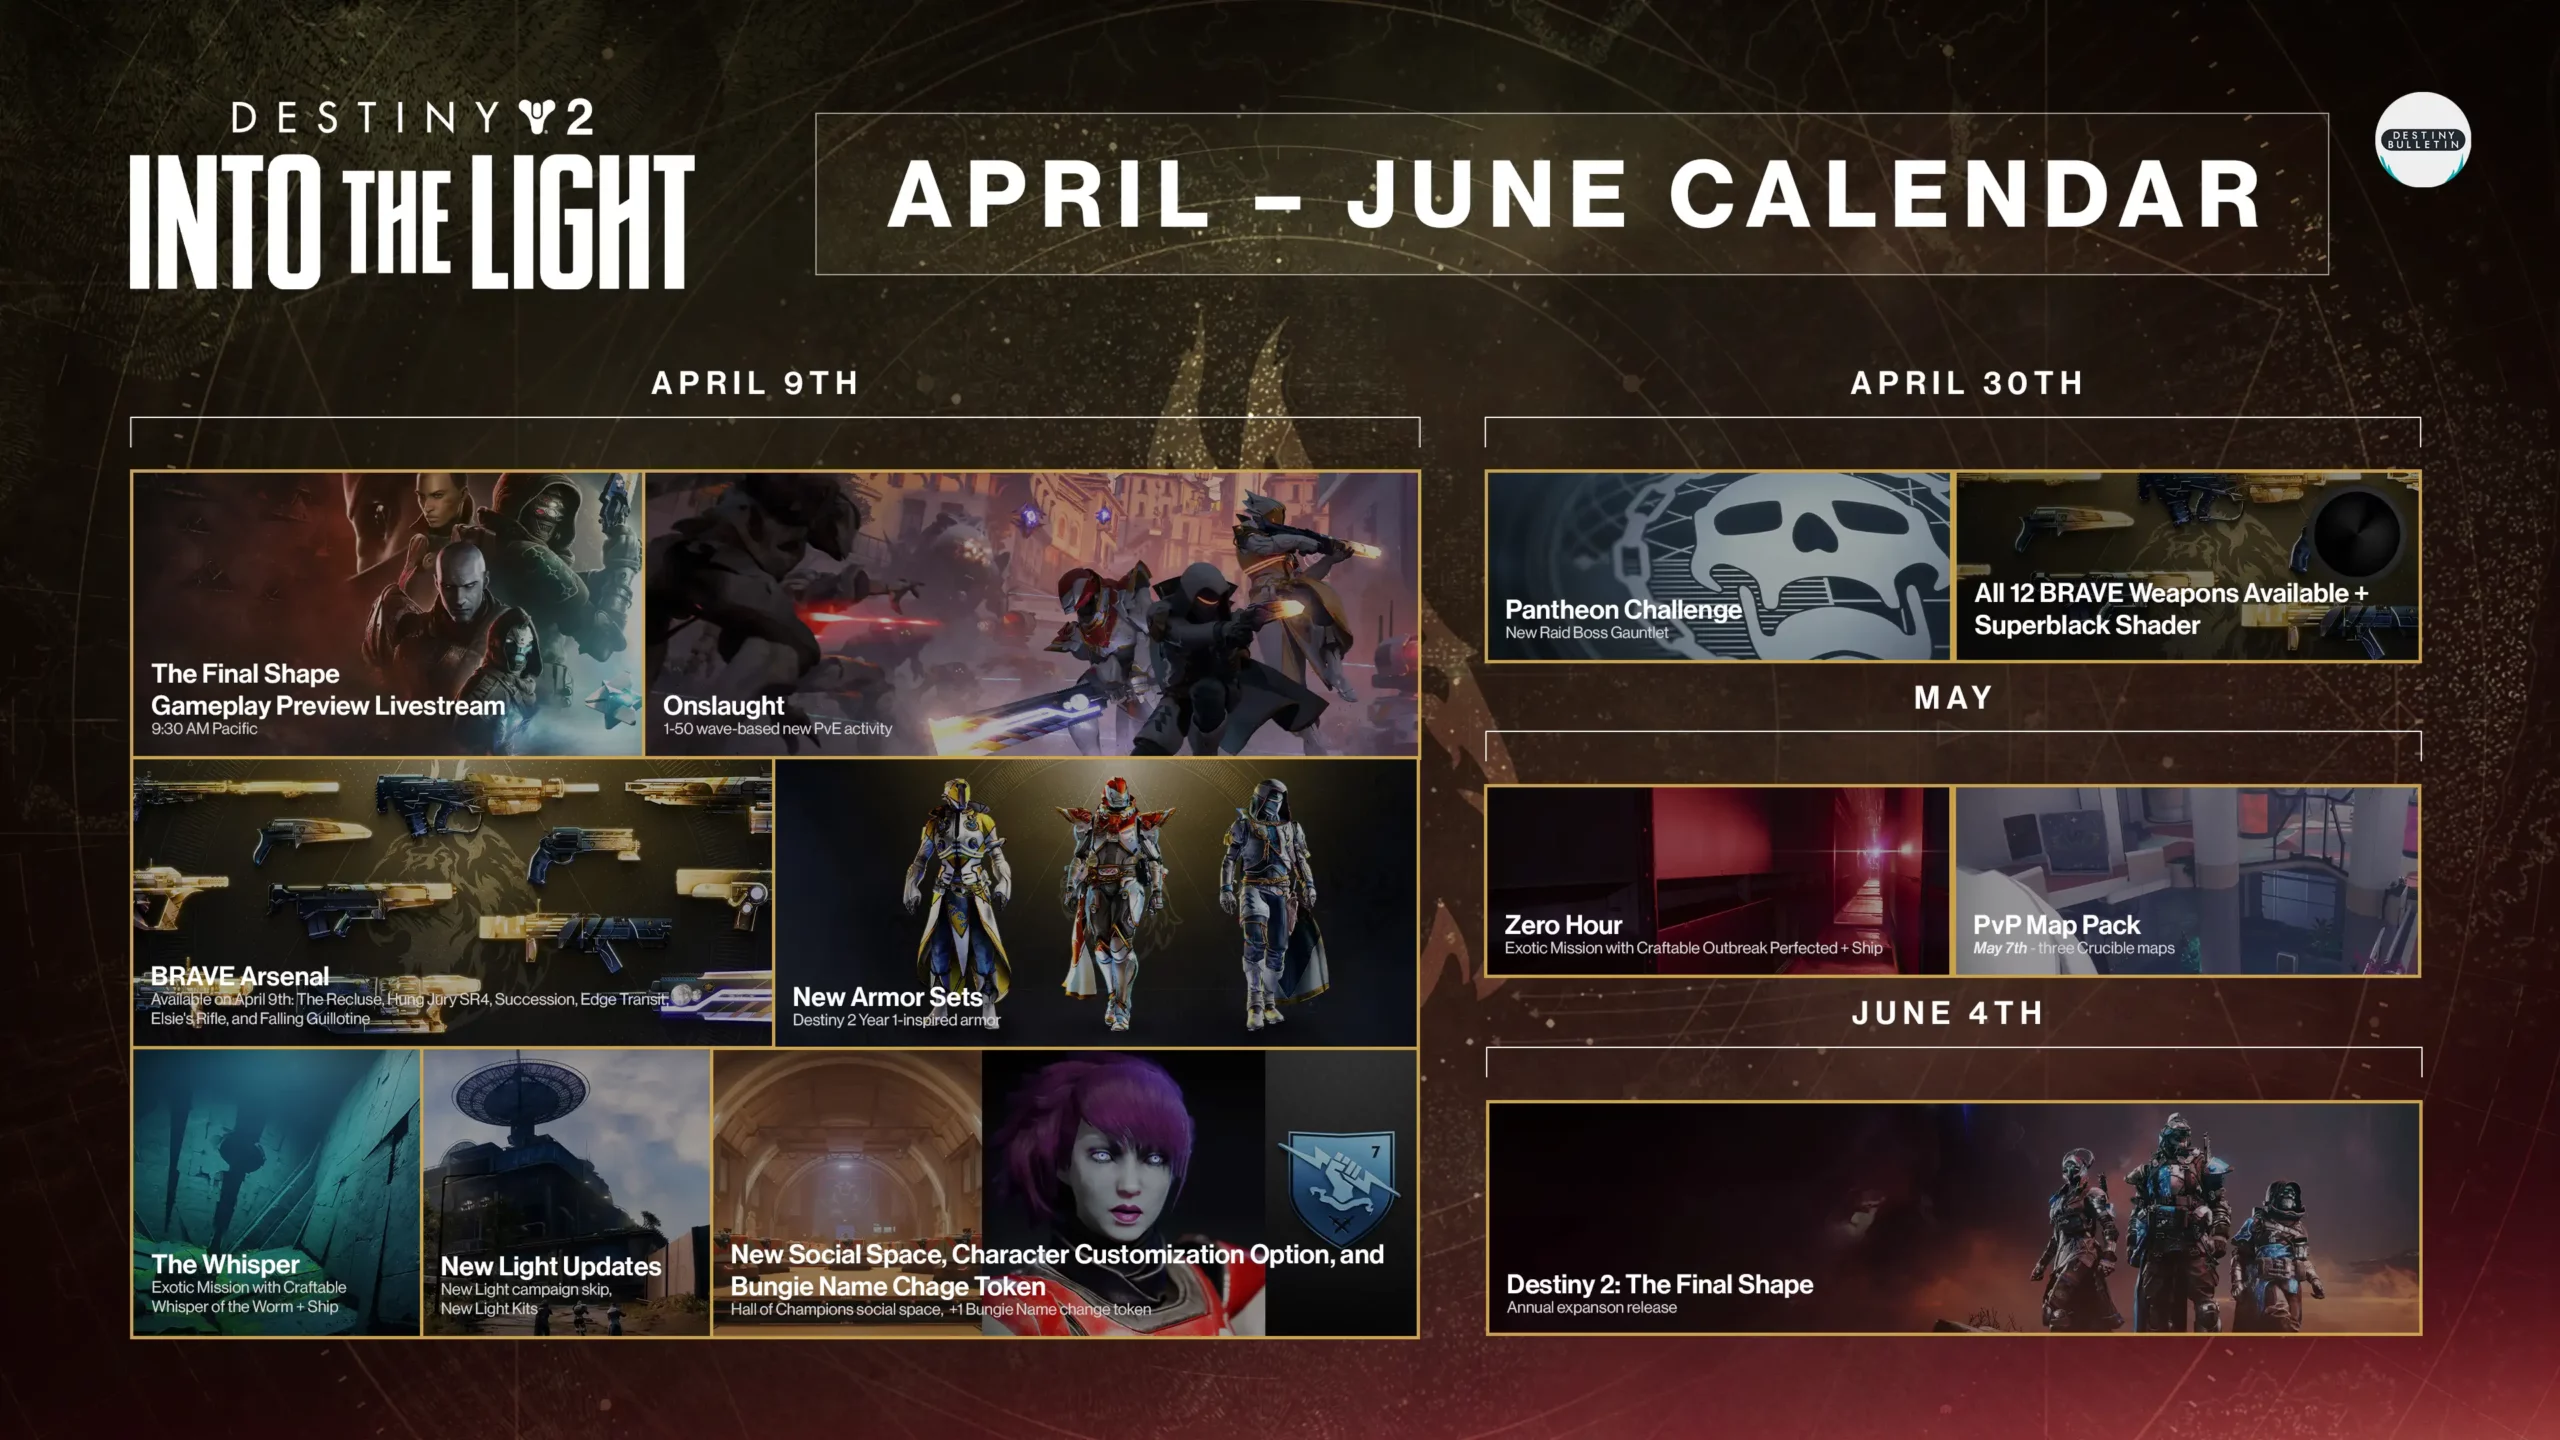 Destiny 2 Into the Light Roadmap Calendar